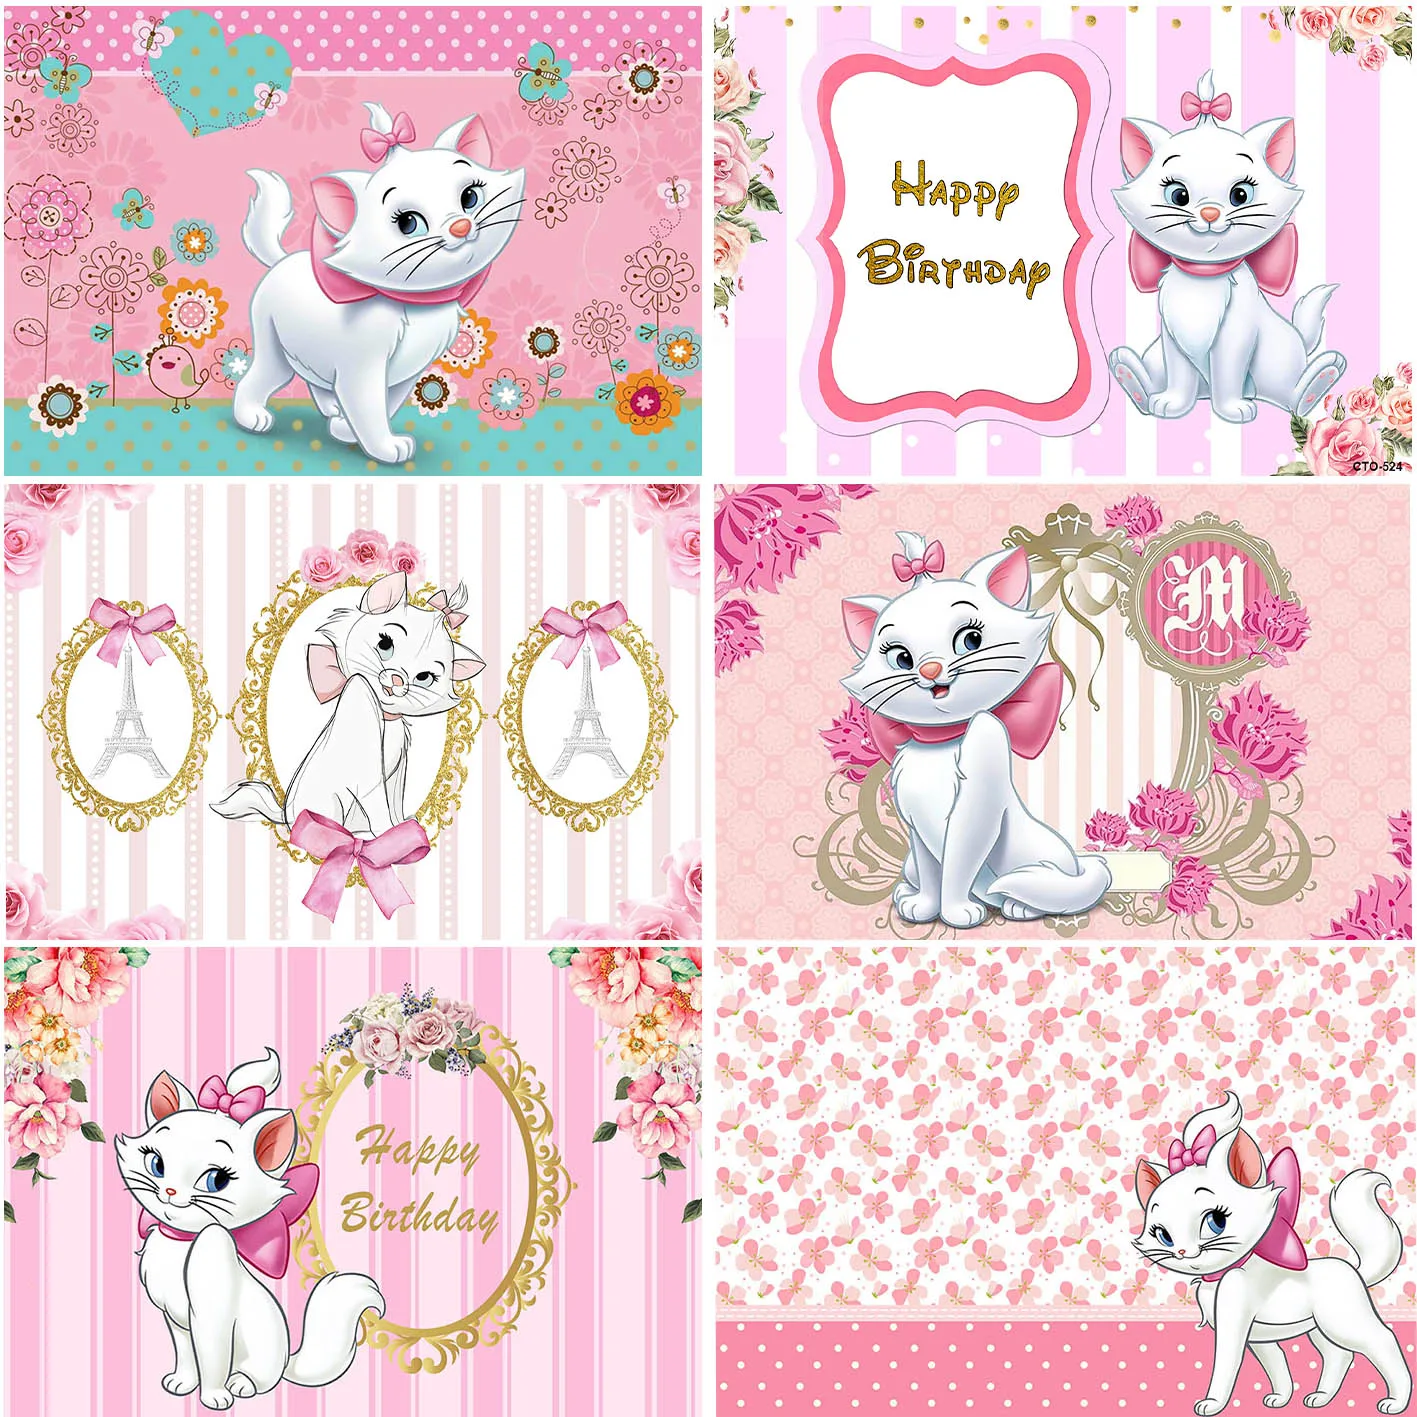 Фоны Disney Pink Marie Cat, милые фотографии для вечеринки по случаю дня рождения девочки, баннер, студийные полосы, фоны для торта и стола